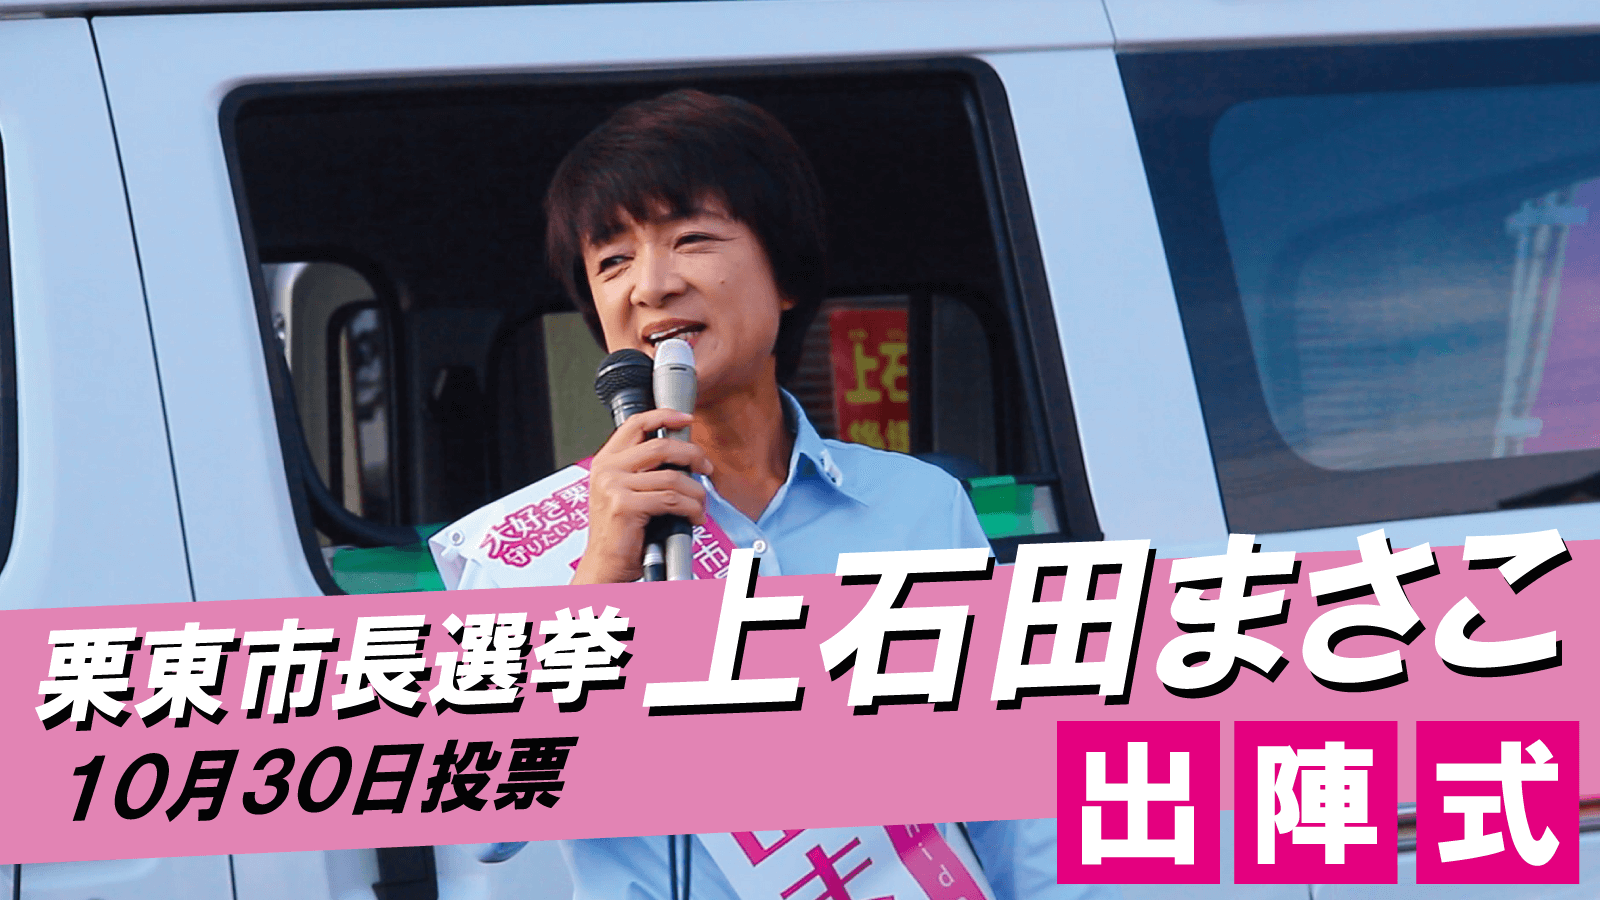 上石田まさこ,youtube,動画,栗東市長選挙,労働組合